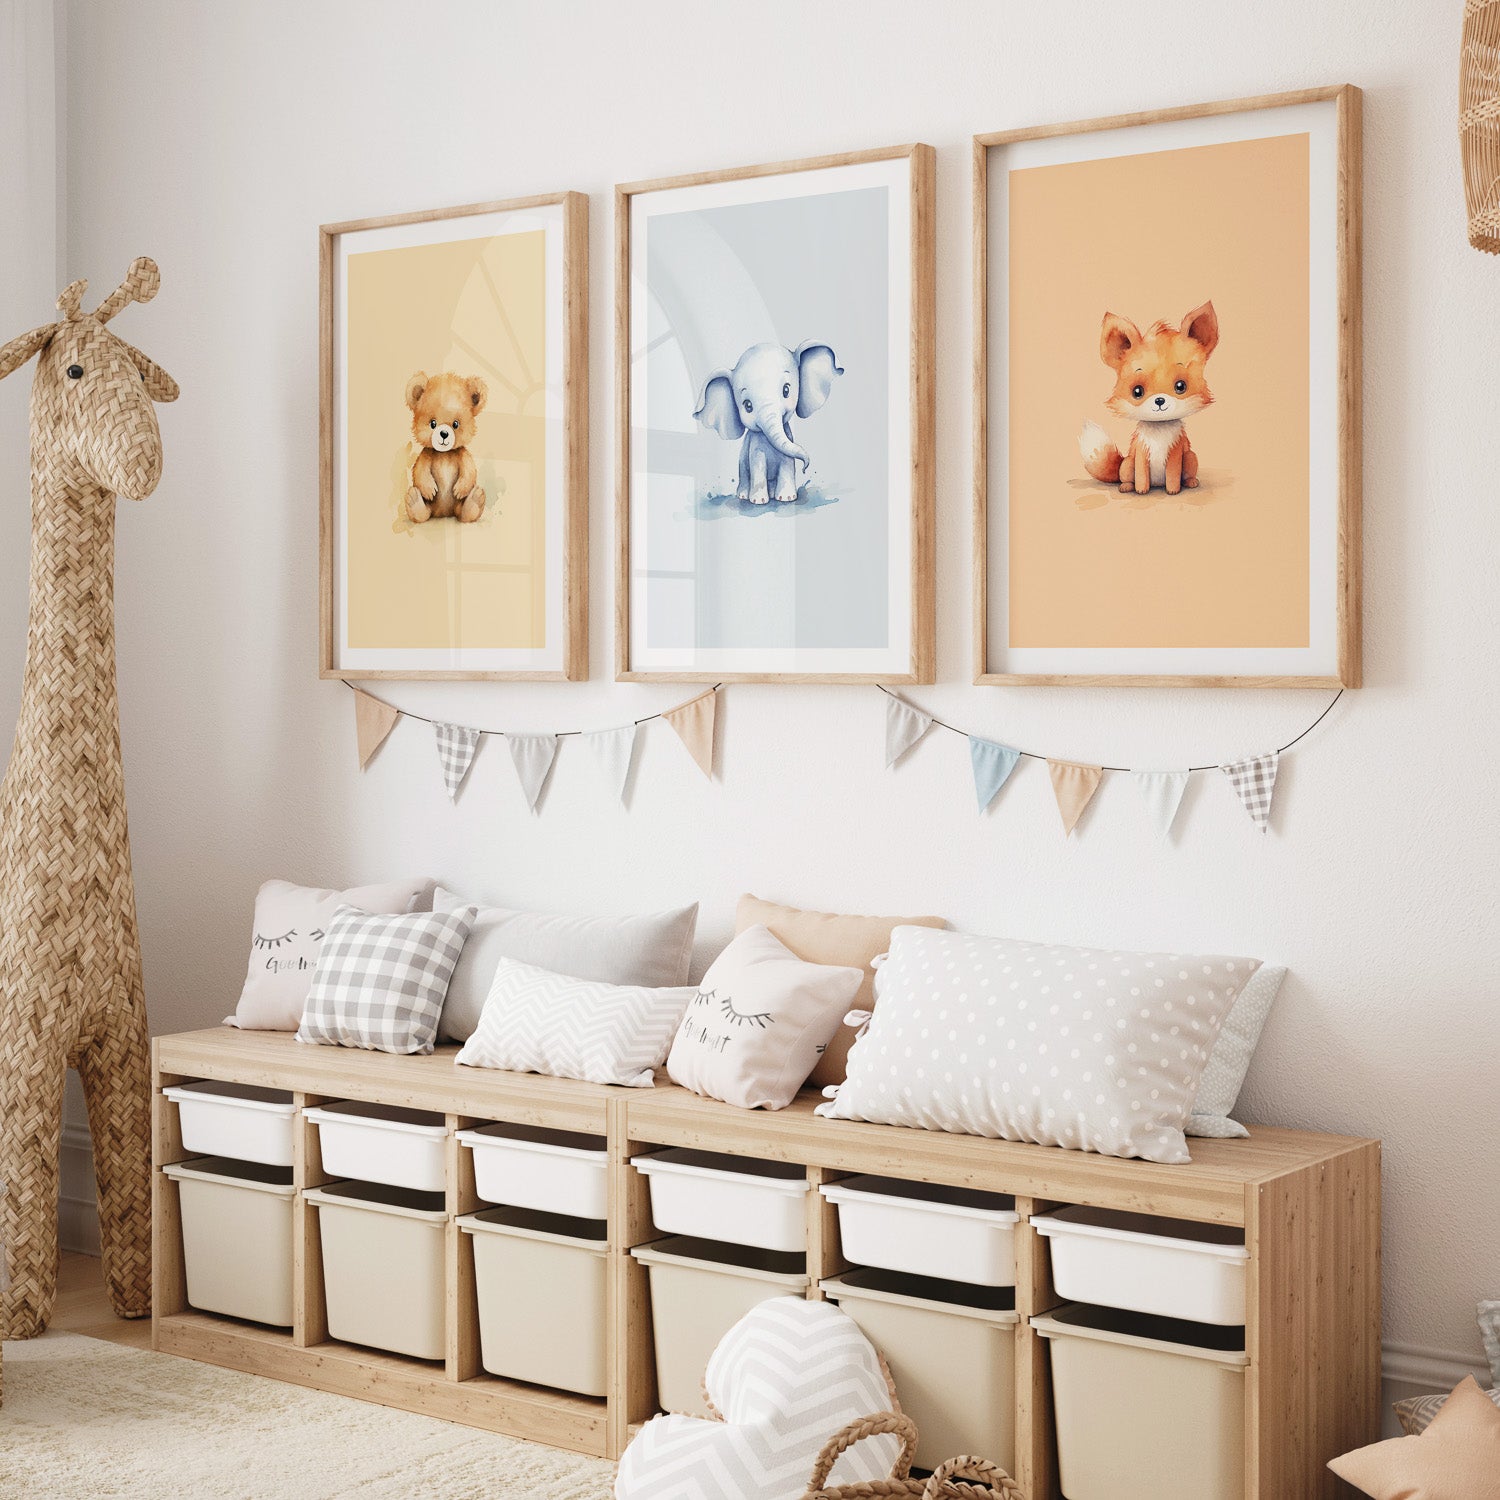 Barntavlor med en räv, björn och elefant, barnposter och affischer till barnrummet